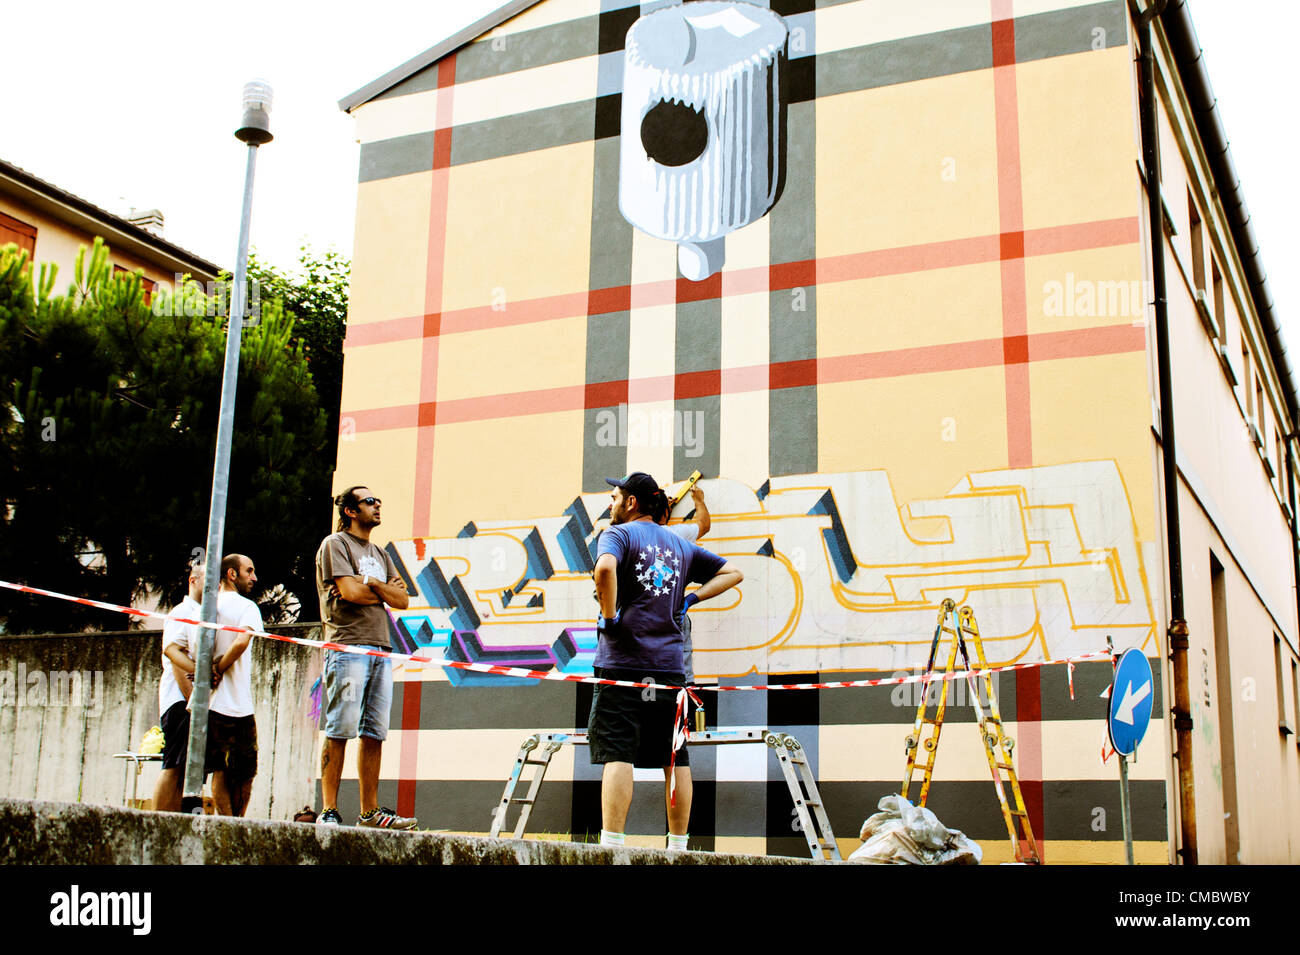 BOLOGNA, Italia - Lug 13: Rusty [internazionale artista di strada] e Hie equipaggio, eseguire su un muro dipinto un murales nel progetto di frontiera, Graffiti arte a Bologna, Italia il Lug 13, 2012. Foto Stock